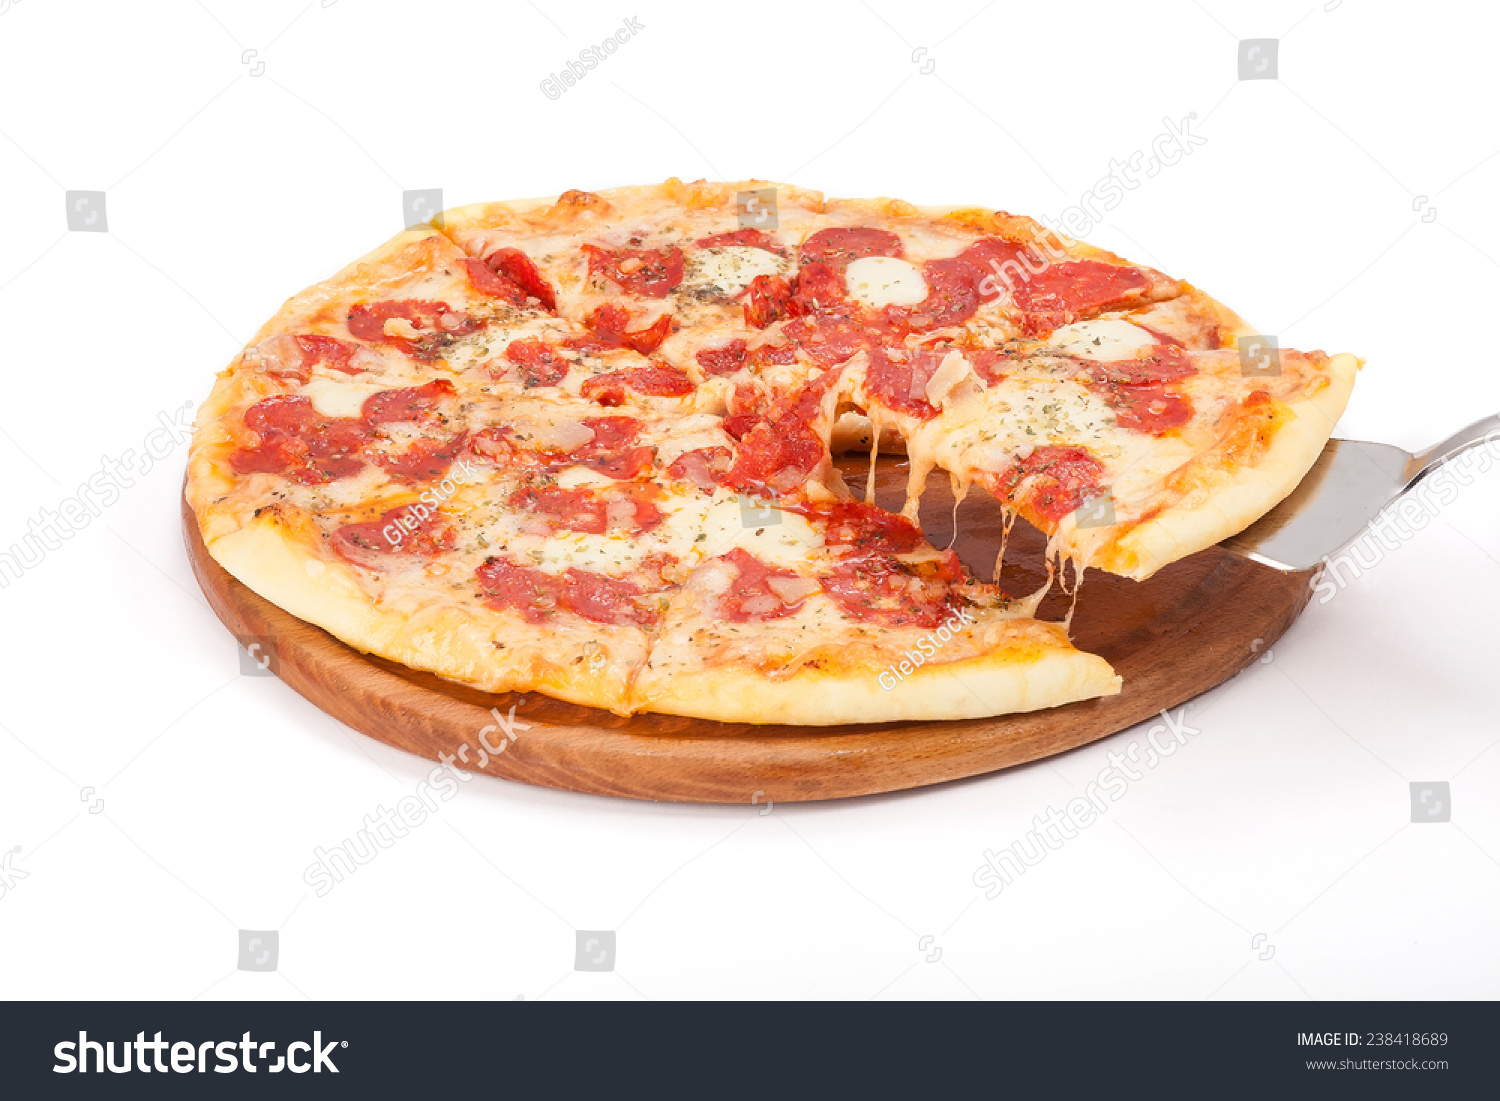 рецепт простой домашней пиццы с колбасой и сыром фото 111